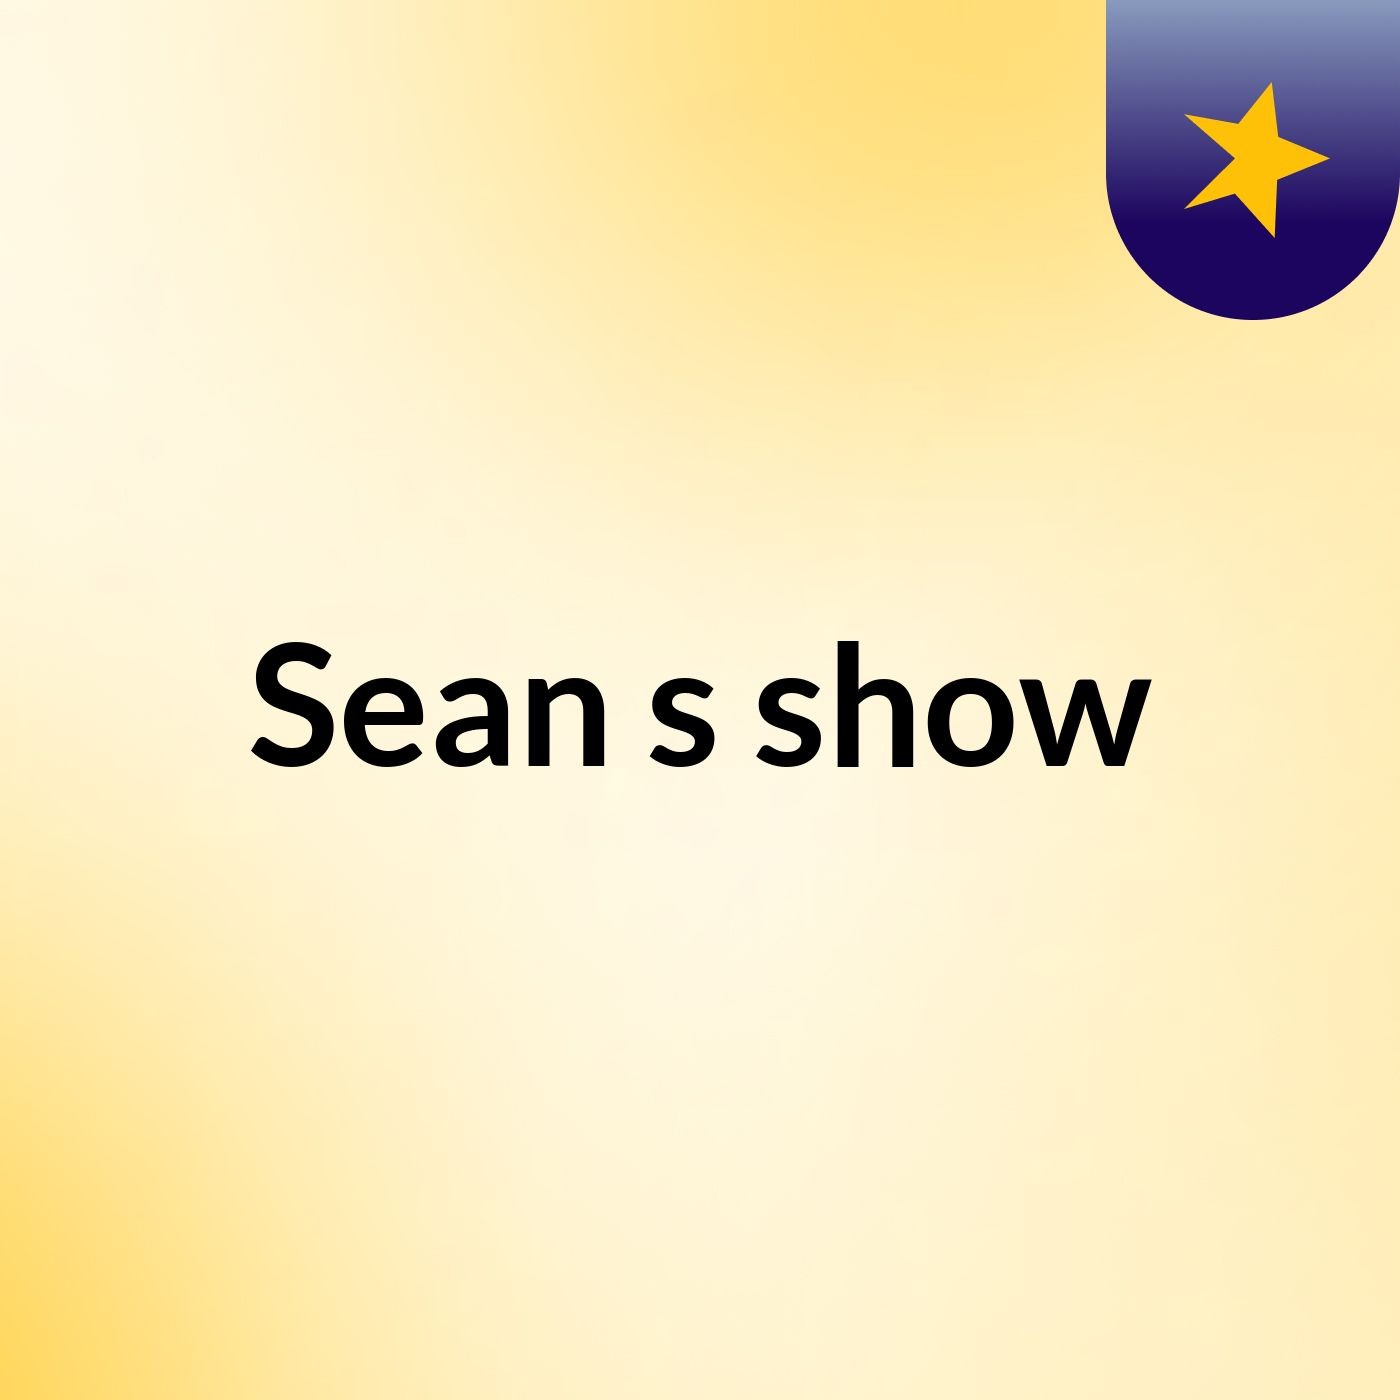 Sean's show